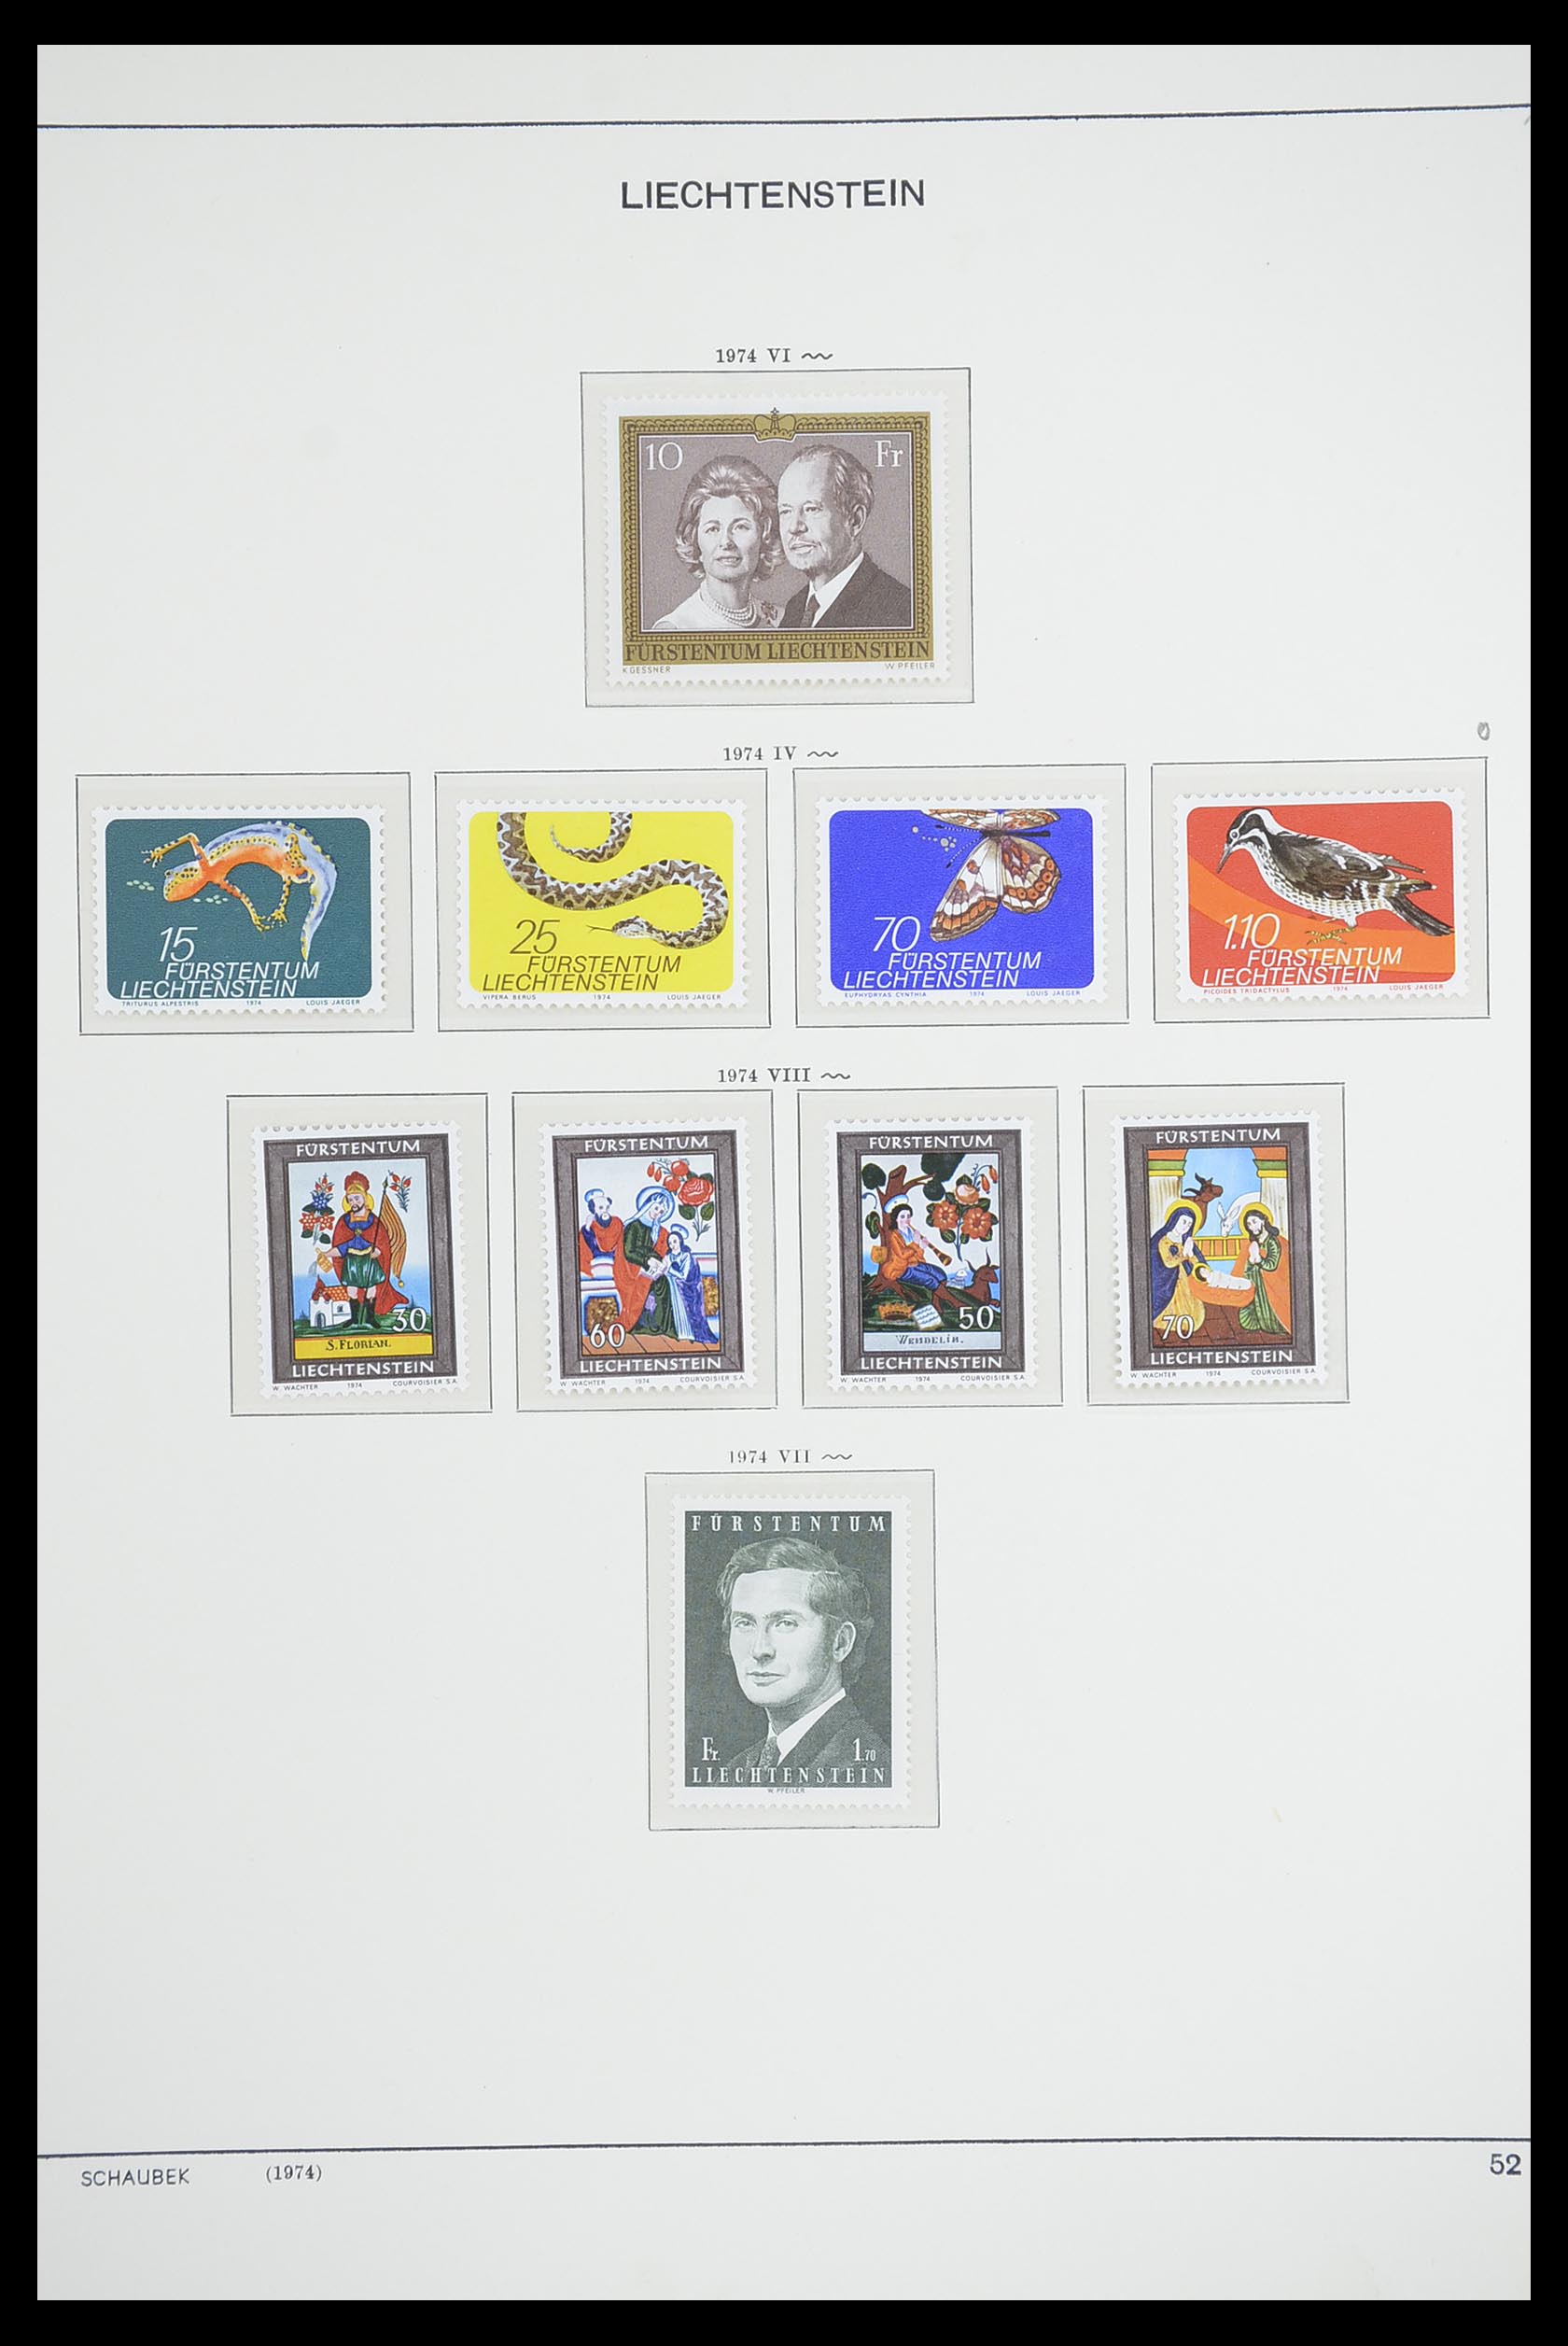 33274 061 - Stamp collection 33274 Liechtenstein 1912-1996.